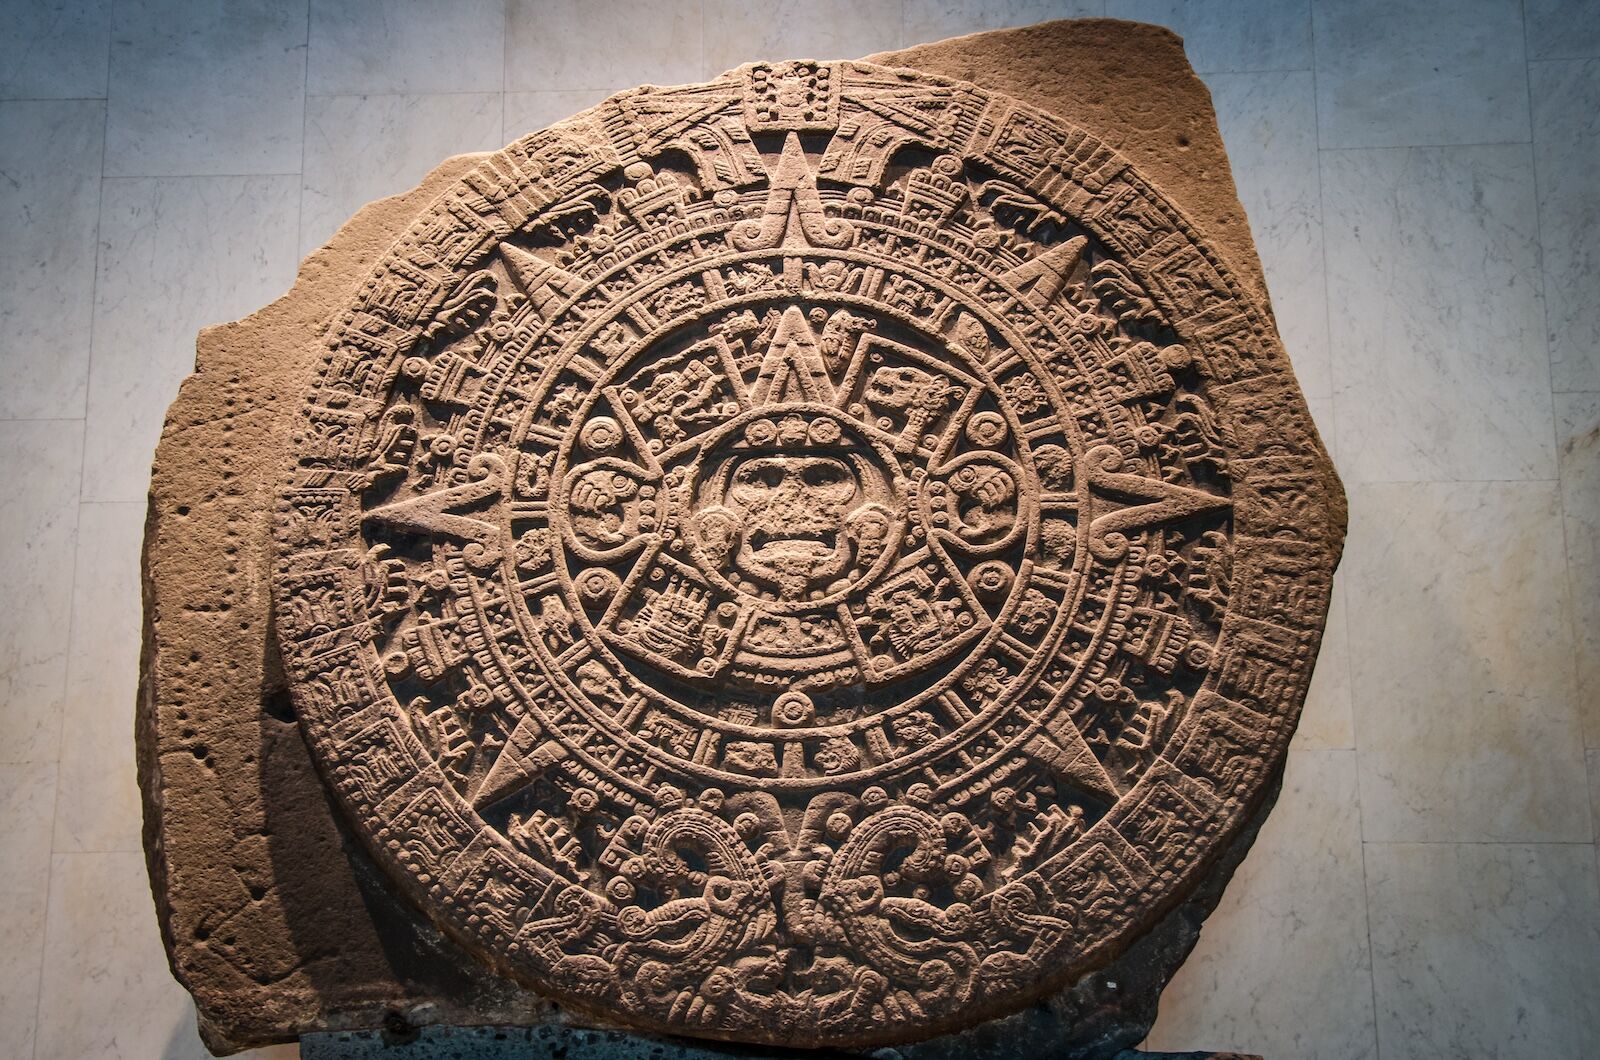 Stone of the sun - the Mayan calendar